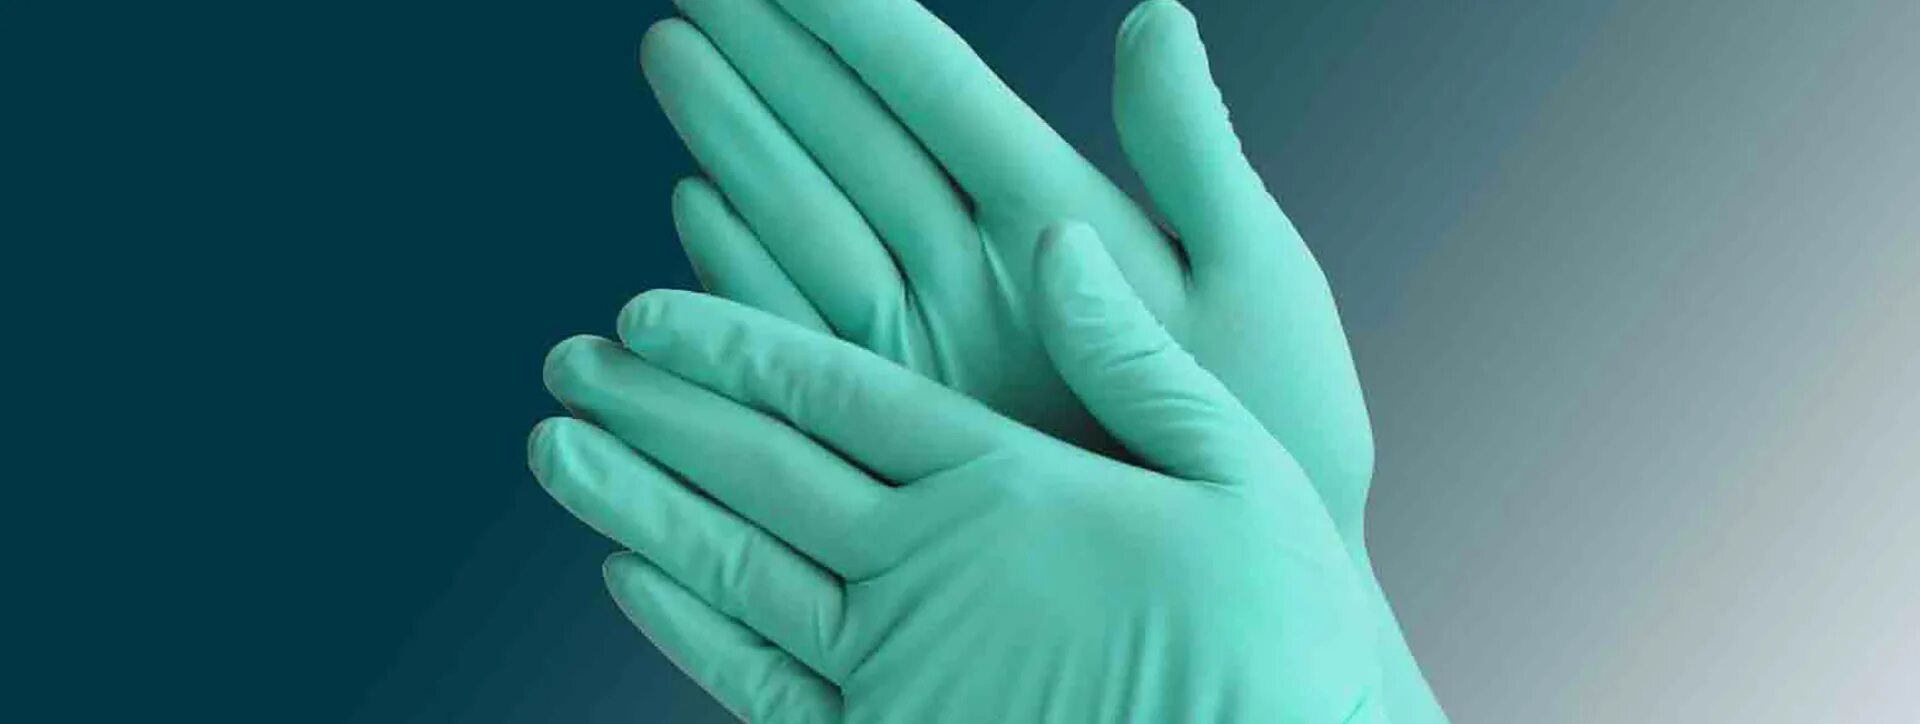 Использование медицинских перчаток тест. Первые медицинские перчатки. Перчатки стерильные из полихлоропрена. Современные перчатки медицинские. Перчатки для стоматологов.